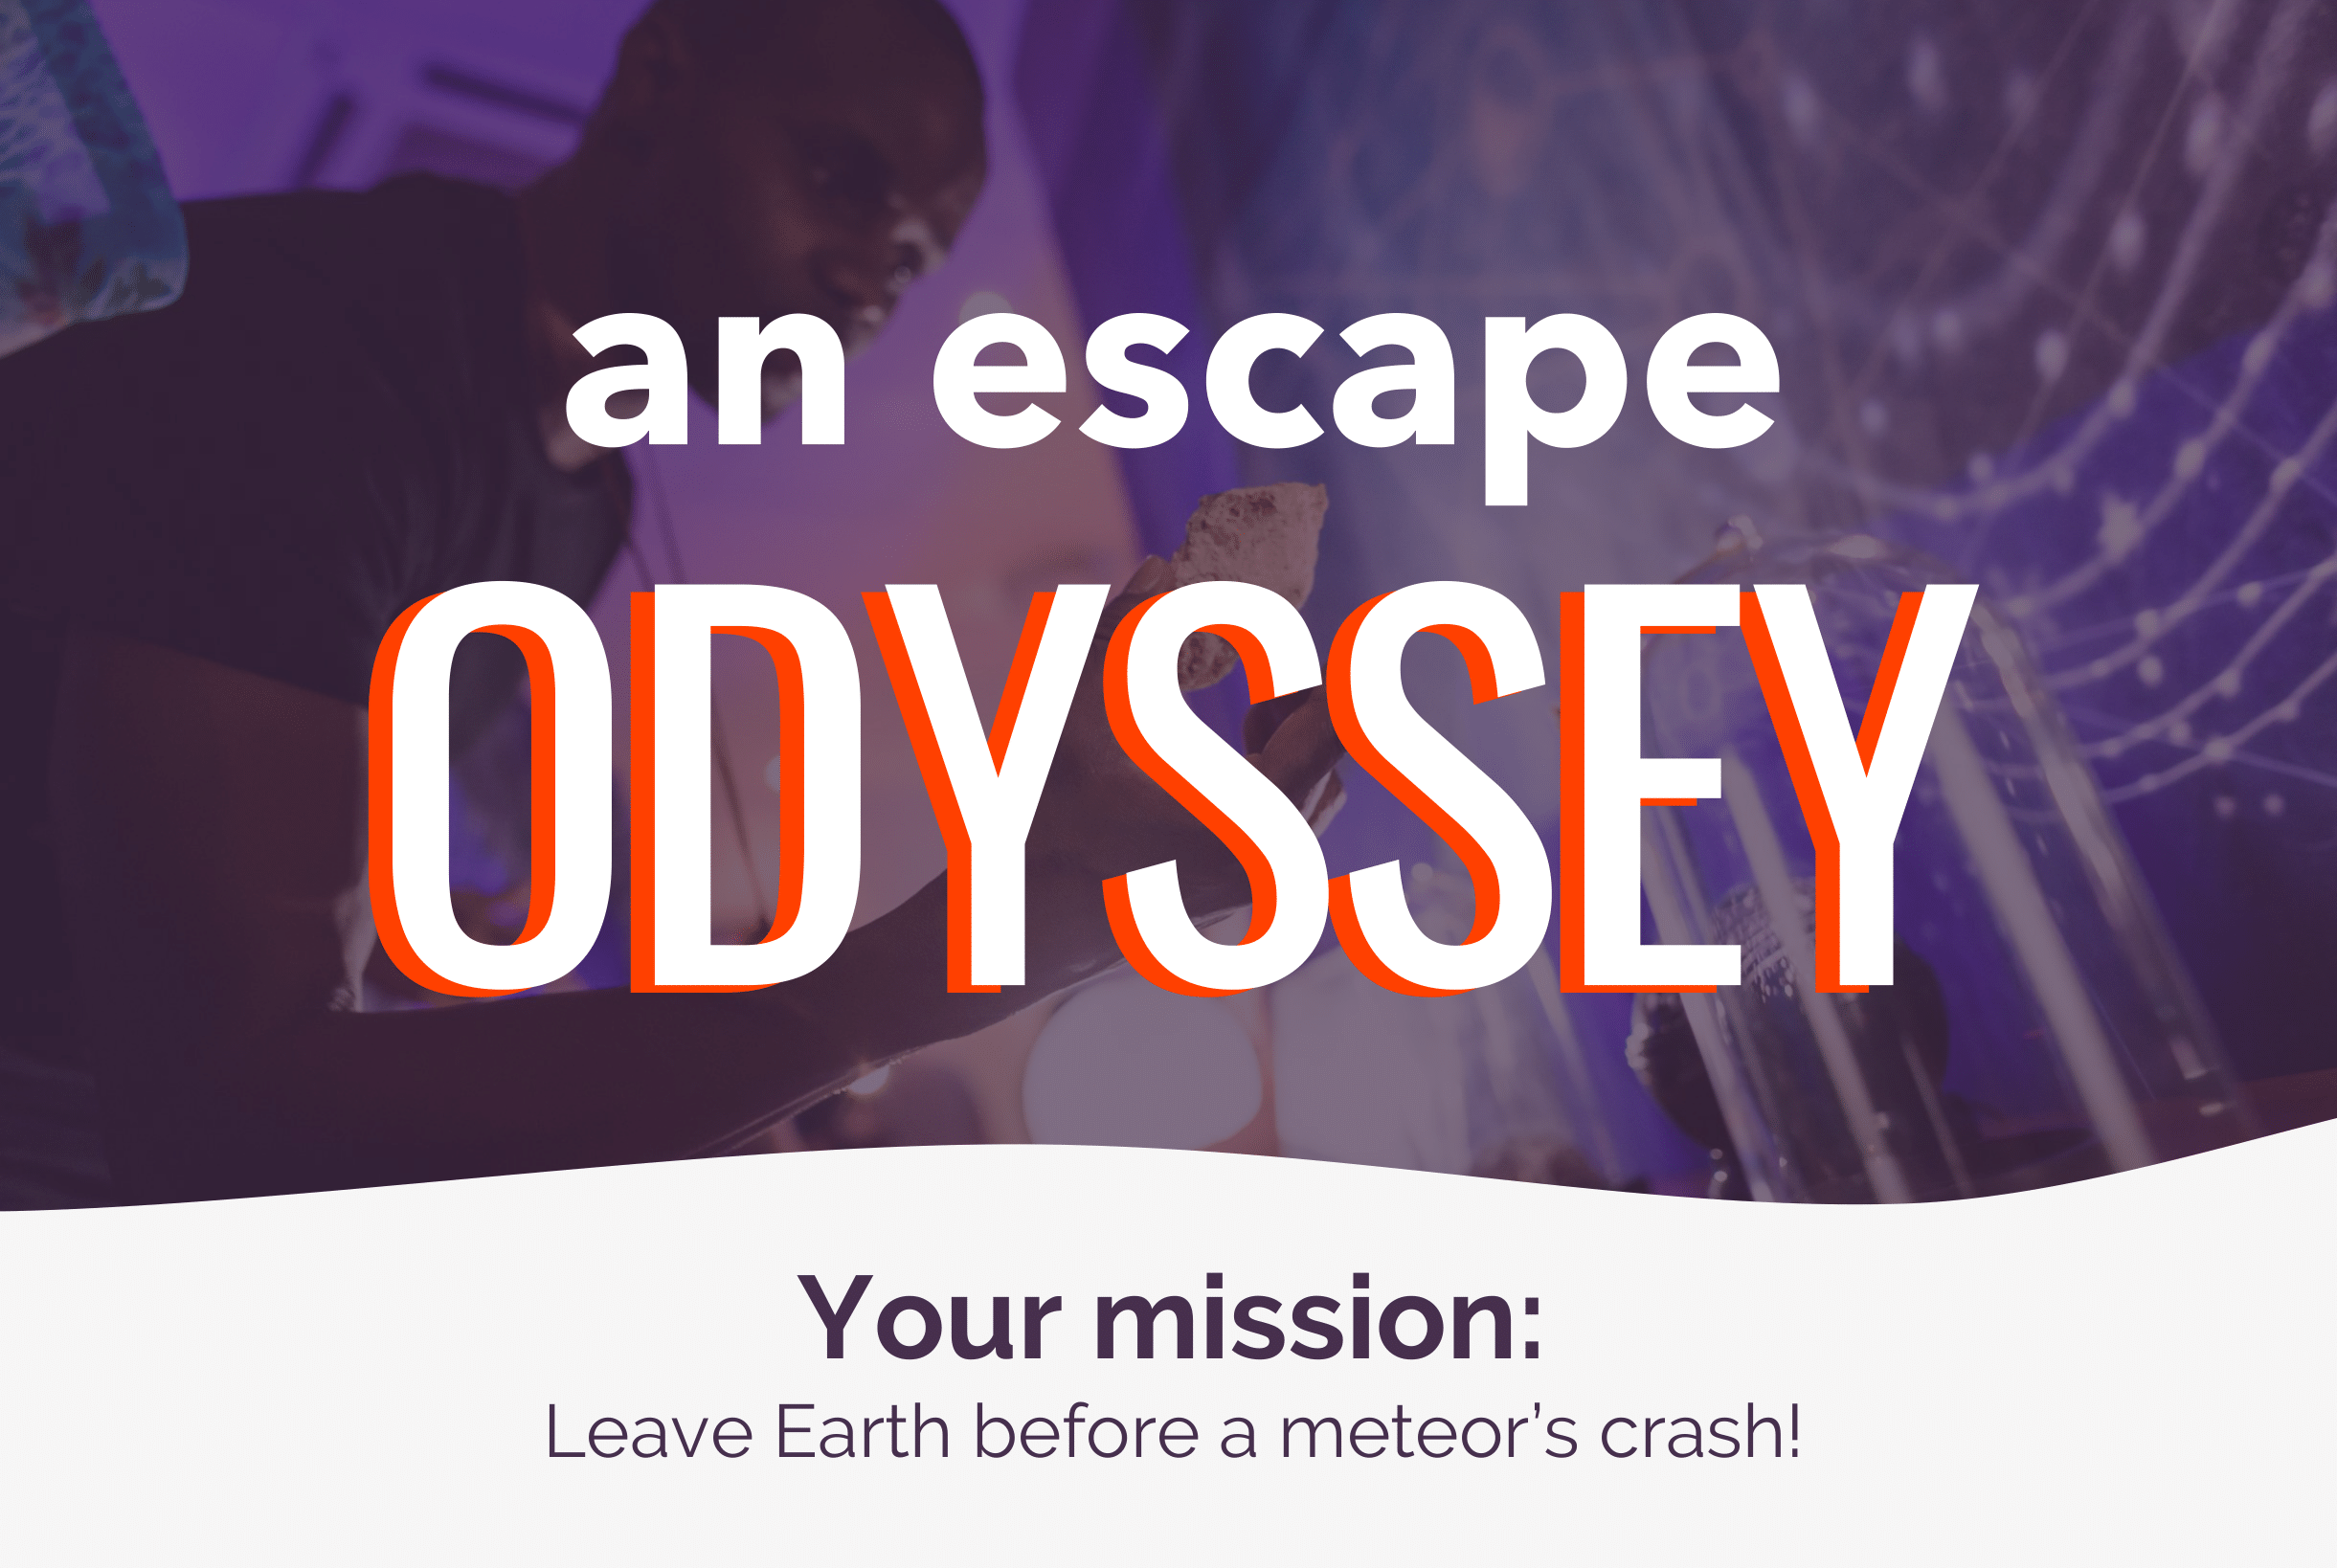 A Escape Odyssey - Giant immersive escape game